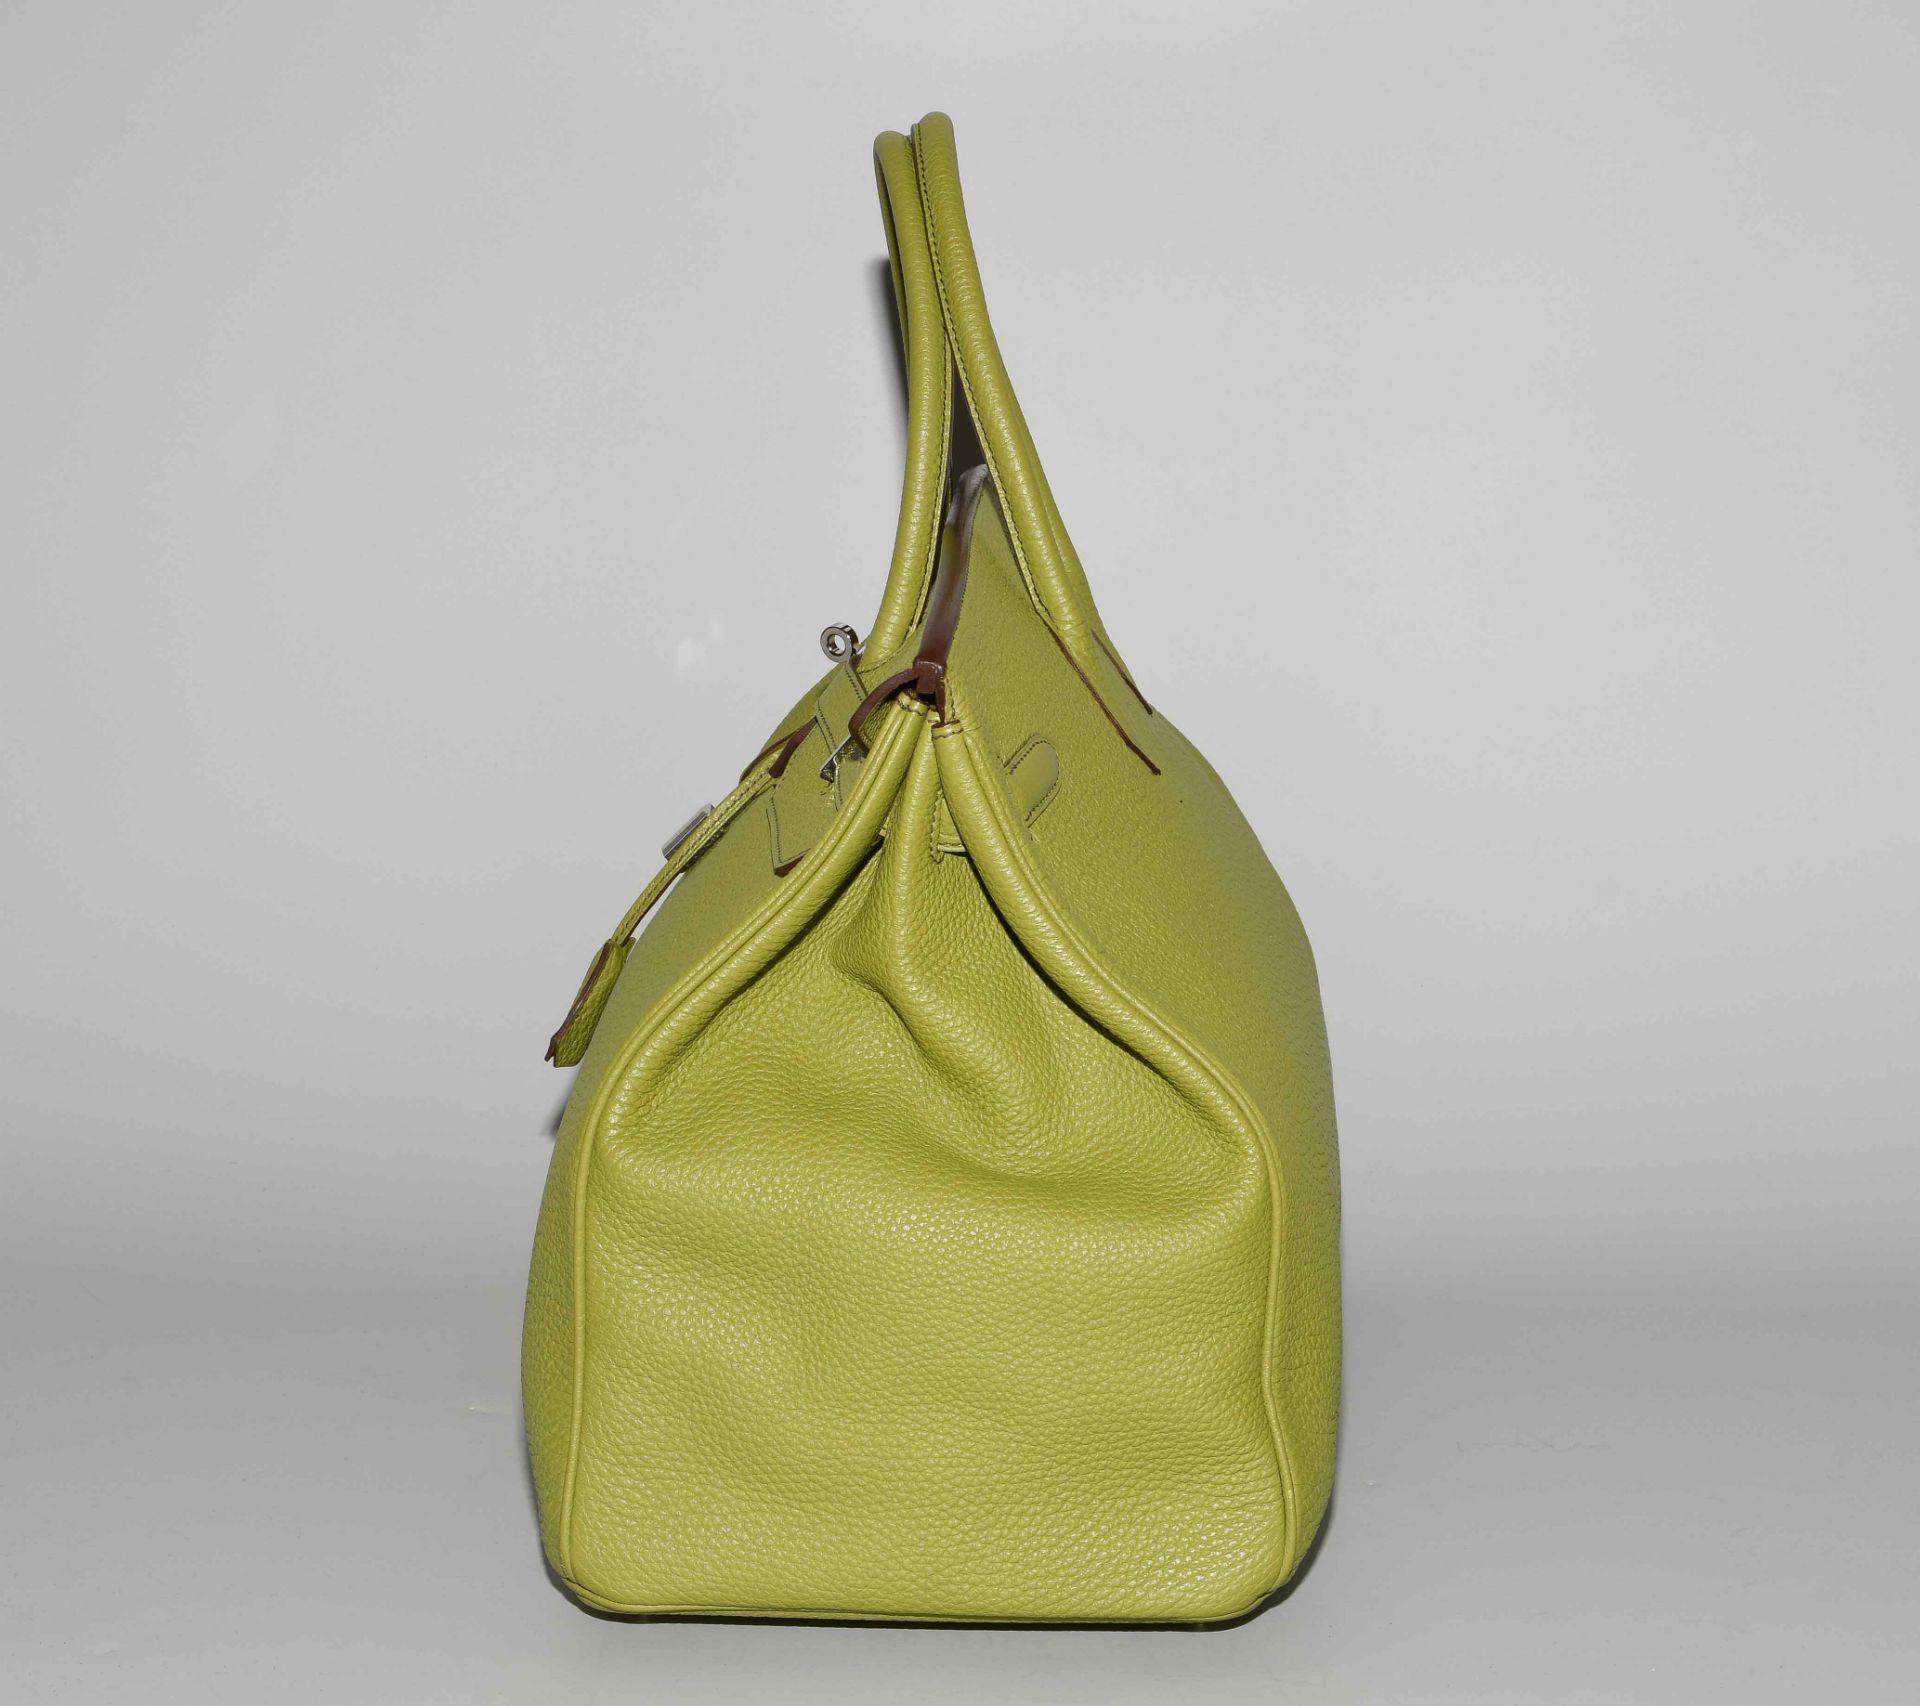 Hermès, Handtasche "Birkin" 40 cm - Image 3 of 21